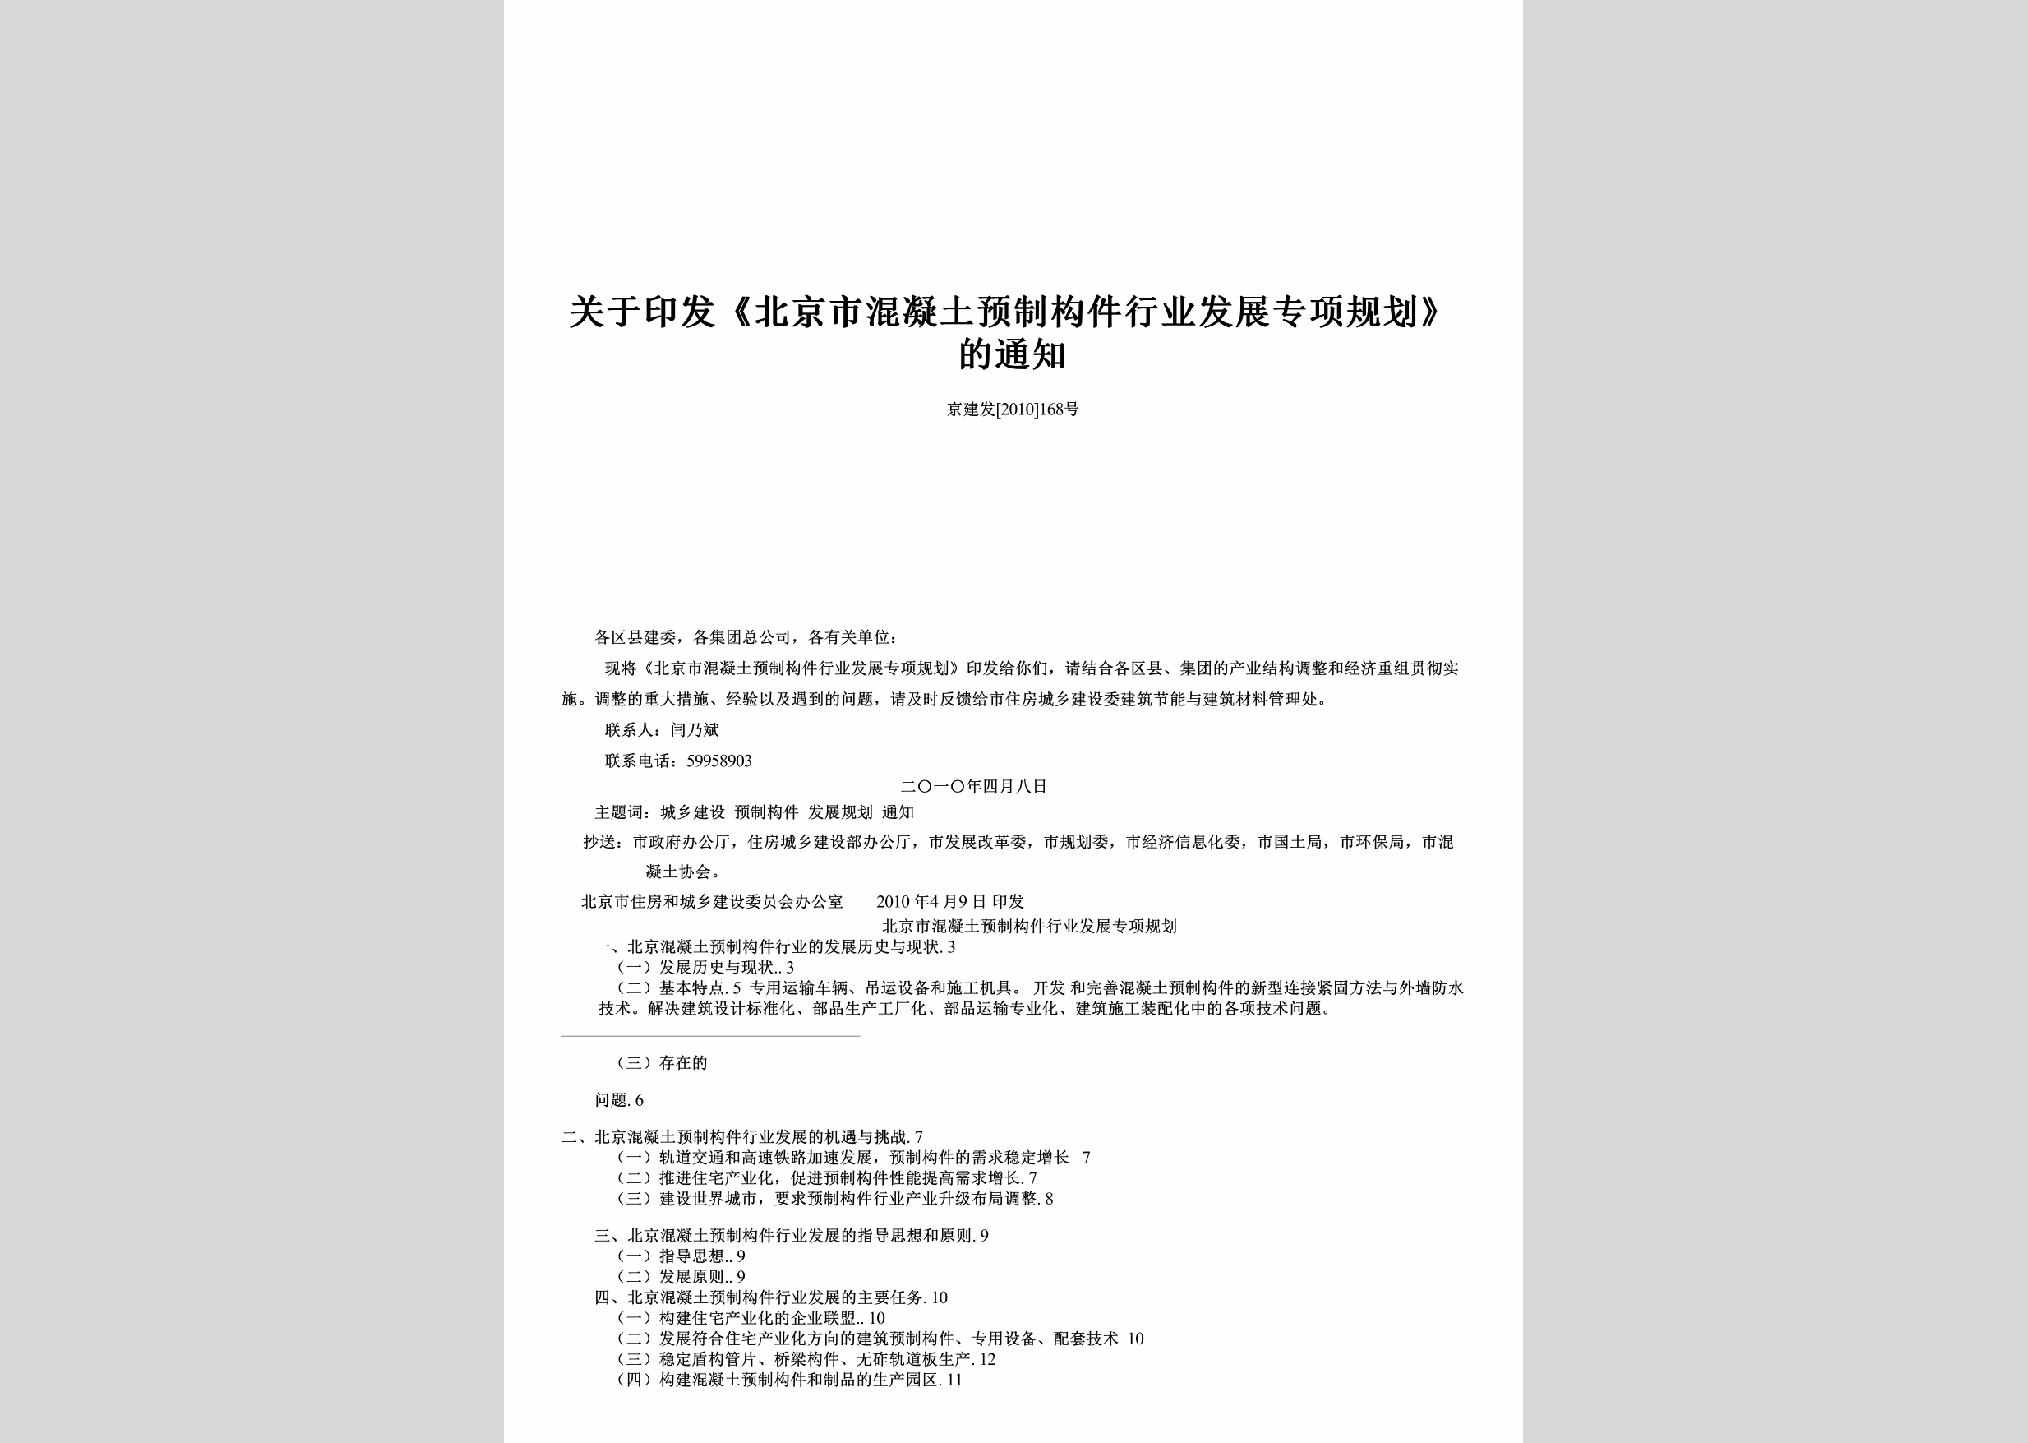 京建发[2010]168号：关于印发《北京市混凝土预制构件行业发展专项规划》的通知